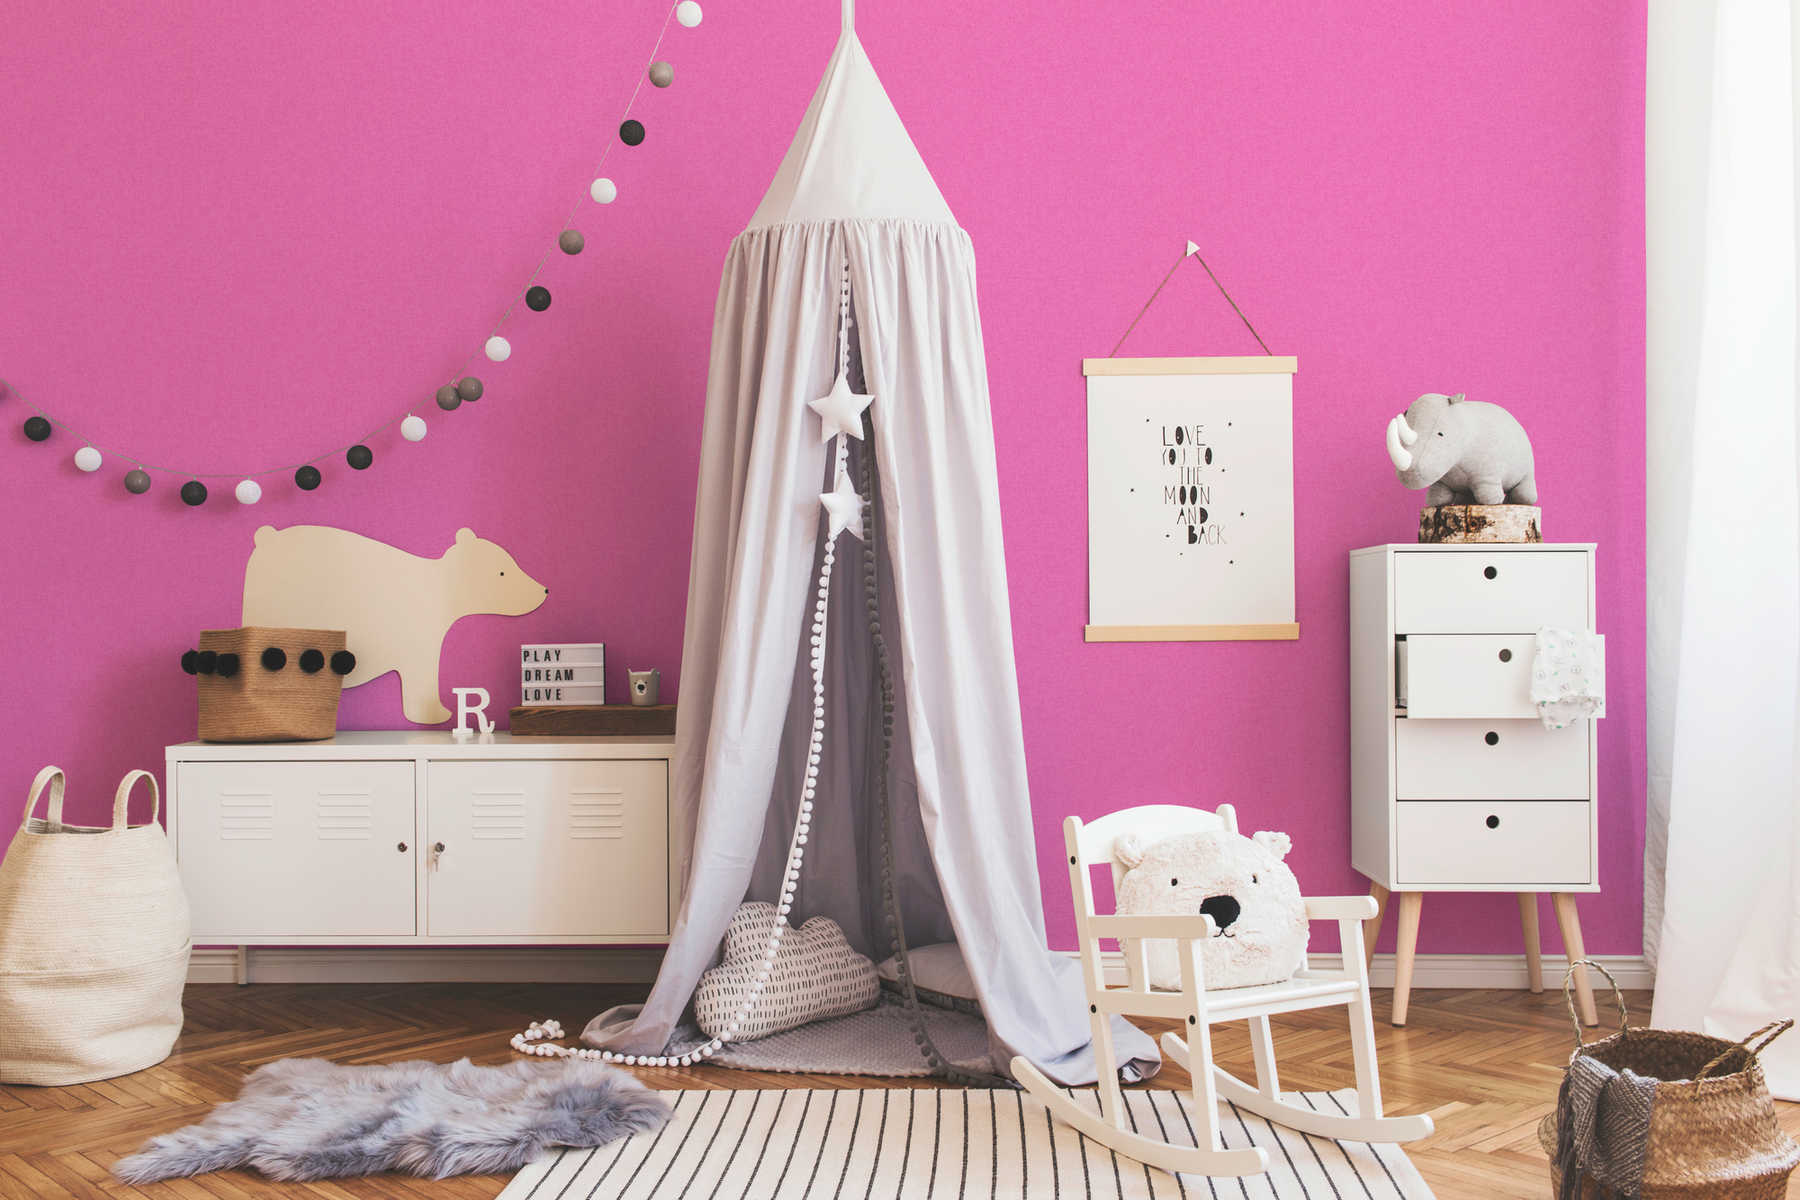             Papier peint rose pour chambre d'enfant fille, uni
        